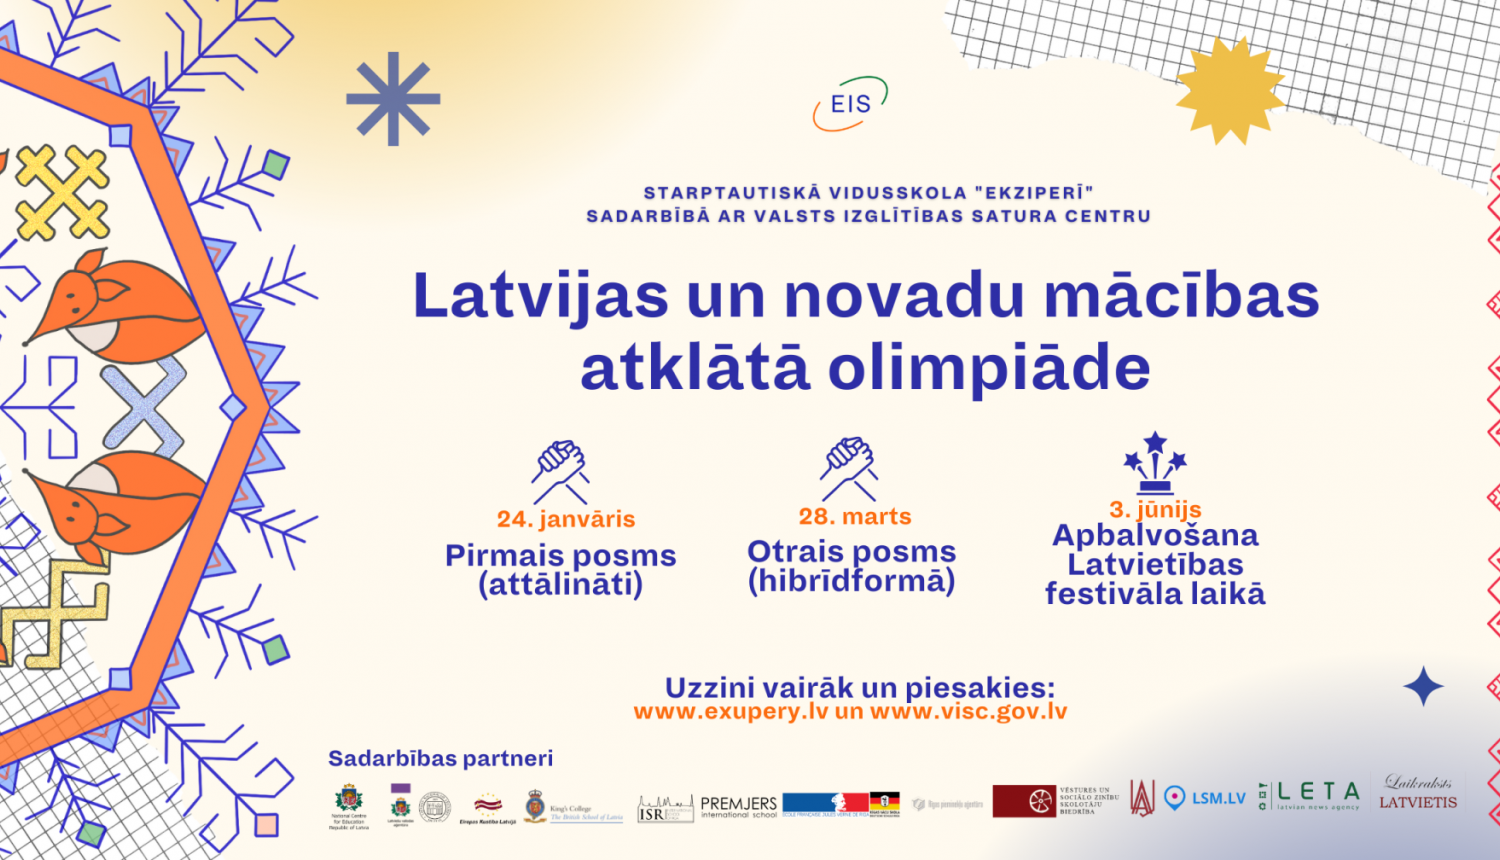 Latvijas un novadu mācības atklātā olimpiāde